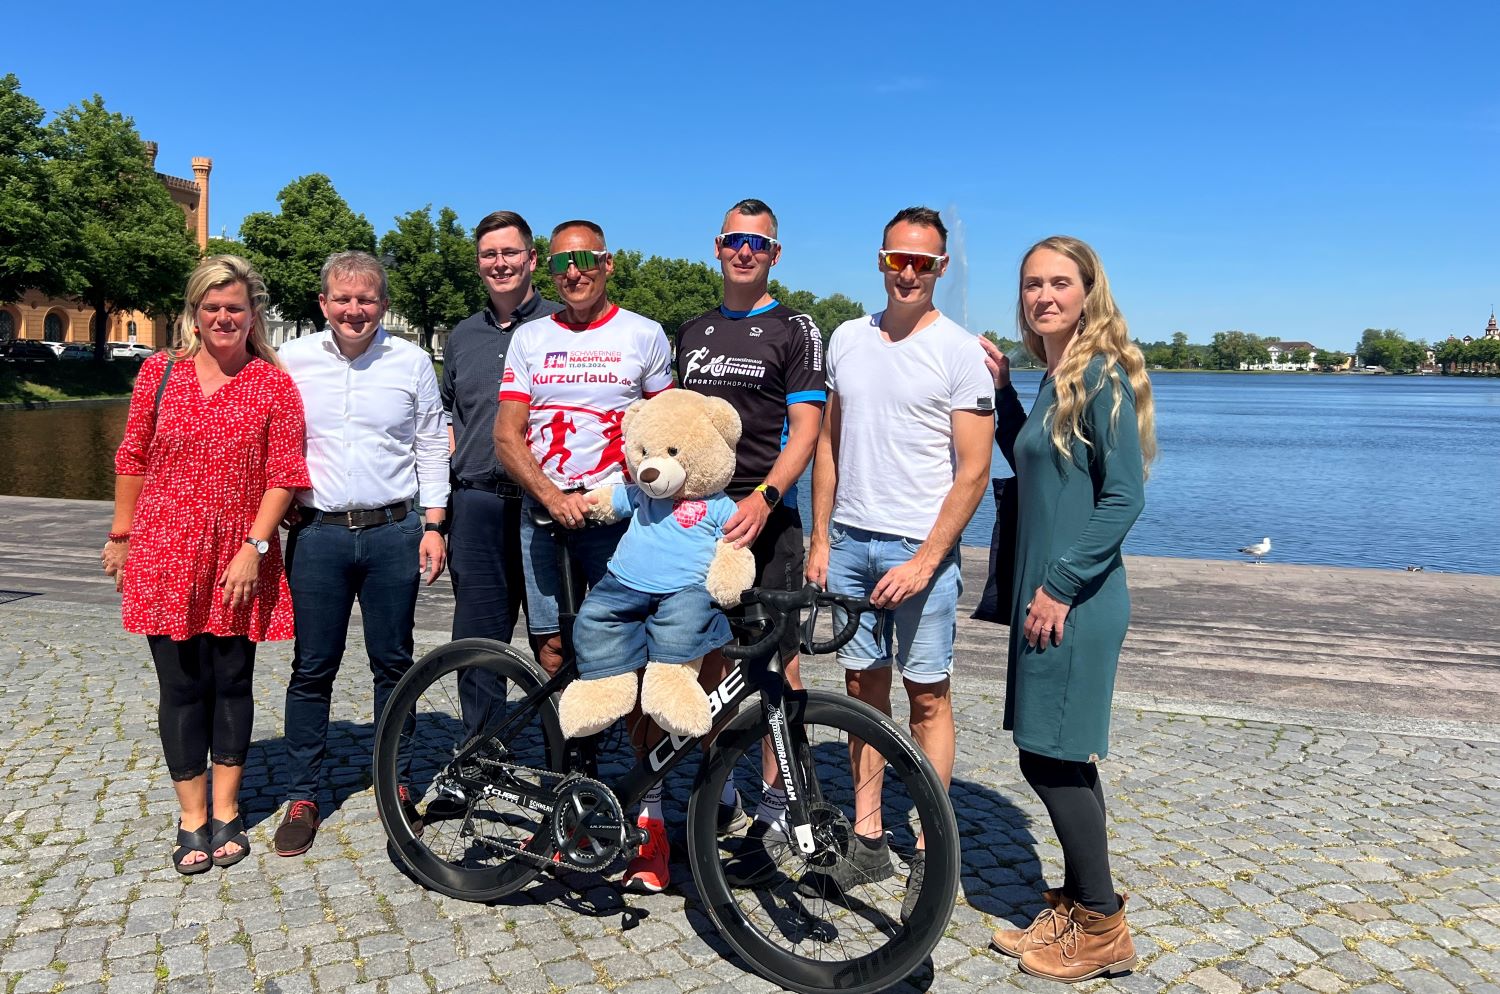 24-Stunden-Rennen in Schwerin: Vier Extremradsporter sammeln Spenden für die Kinderhospizarbeit 